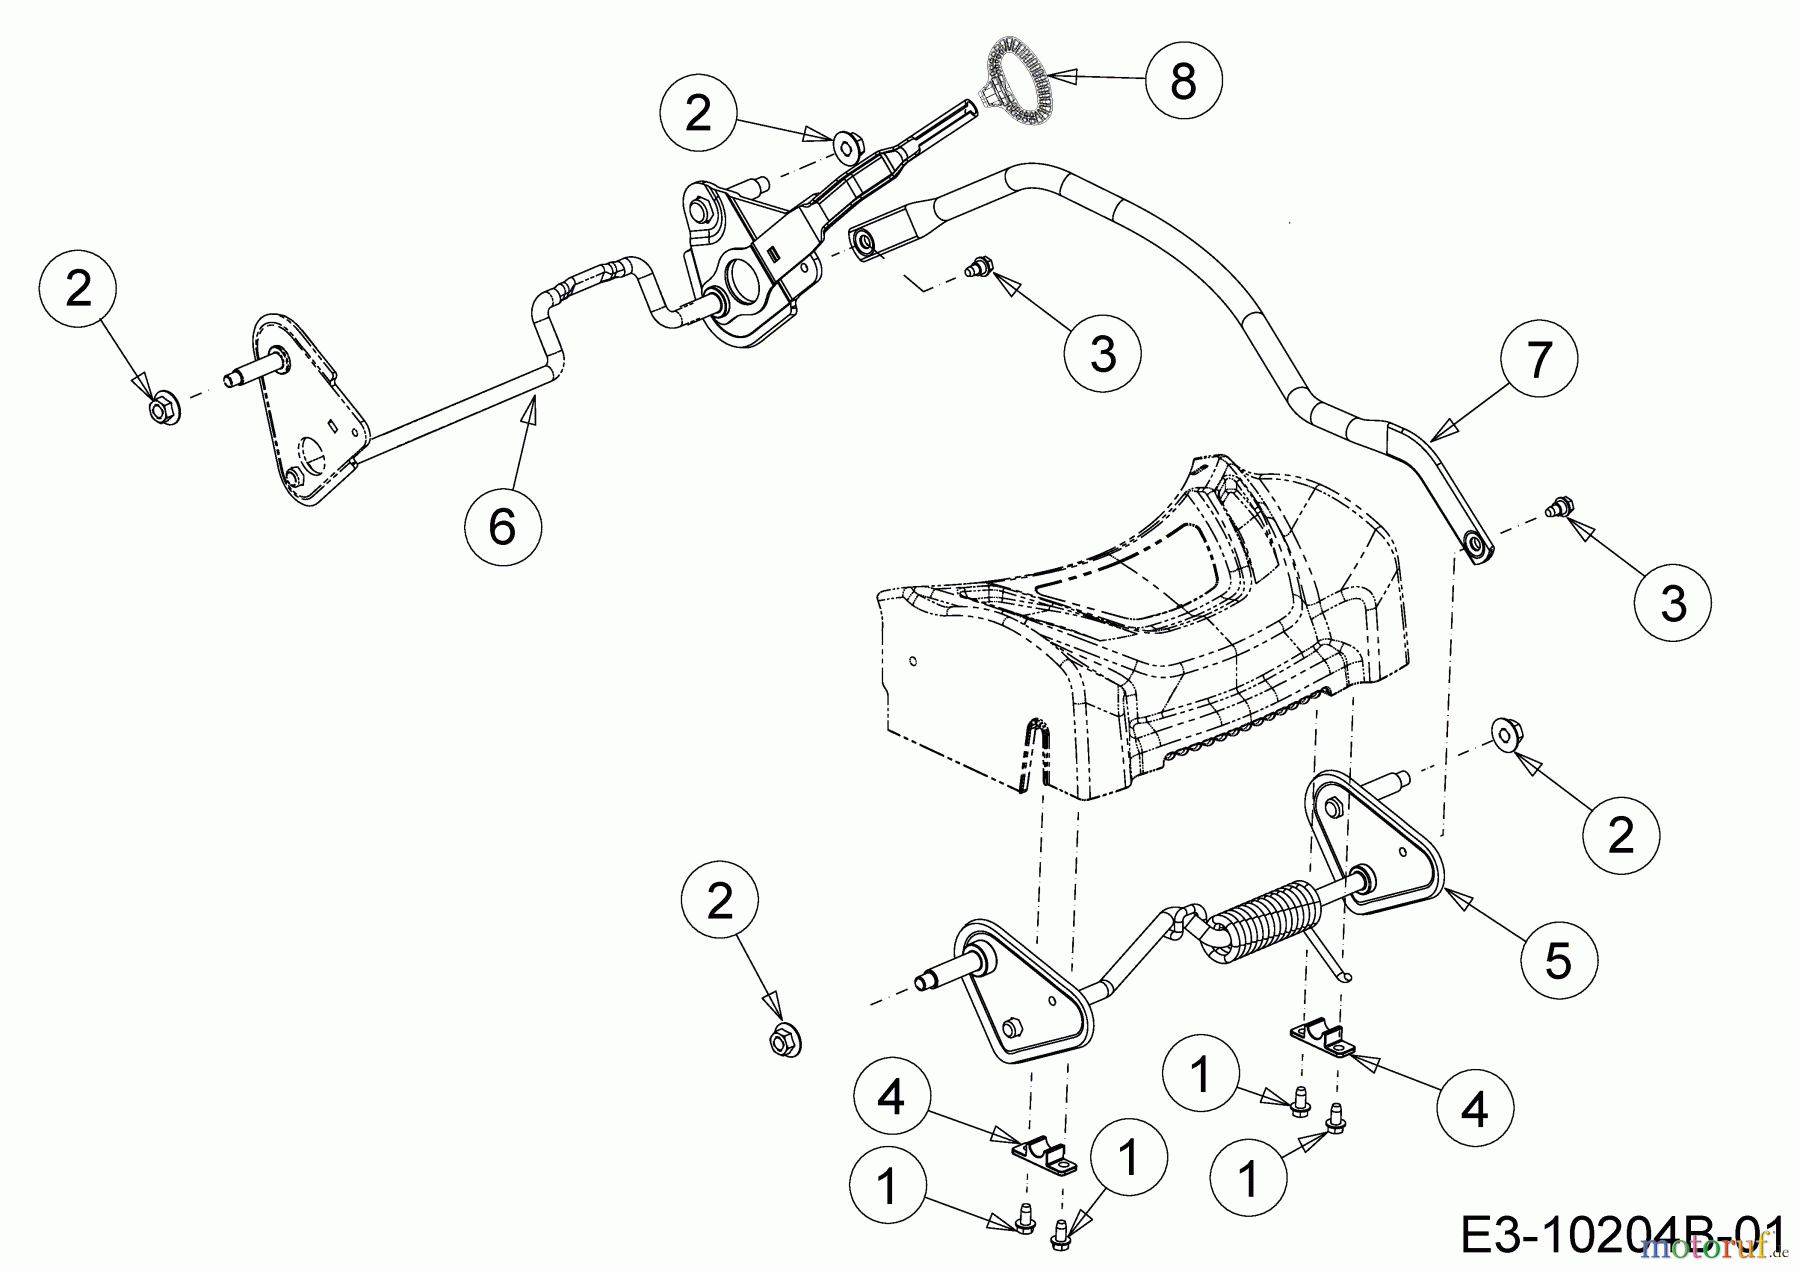  Wolf-Garten Petrol mower self propelled AH 4200 H 12A-LV5B650  (2018) Axles, Height adjustment